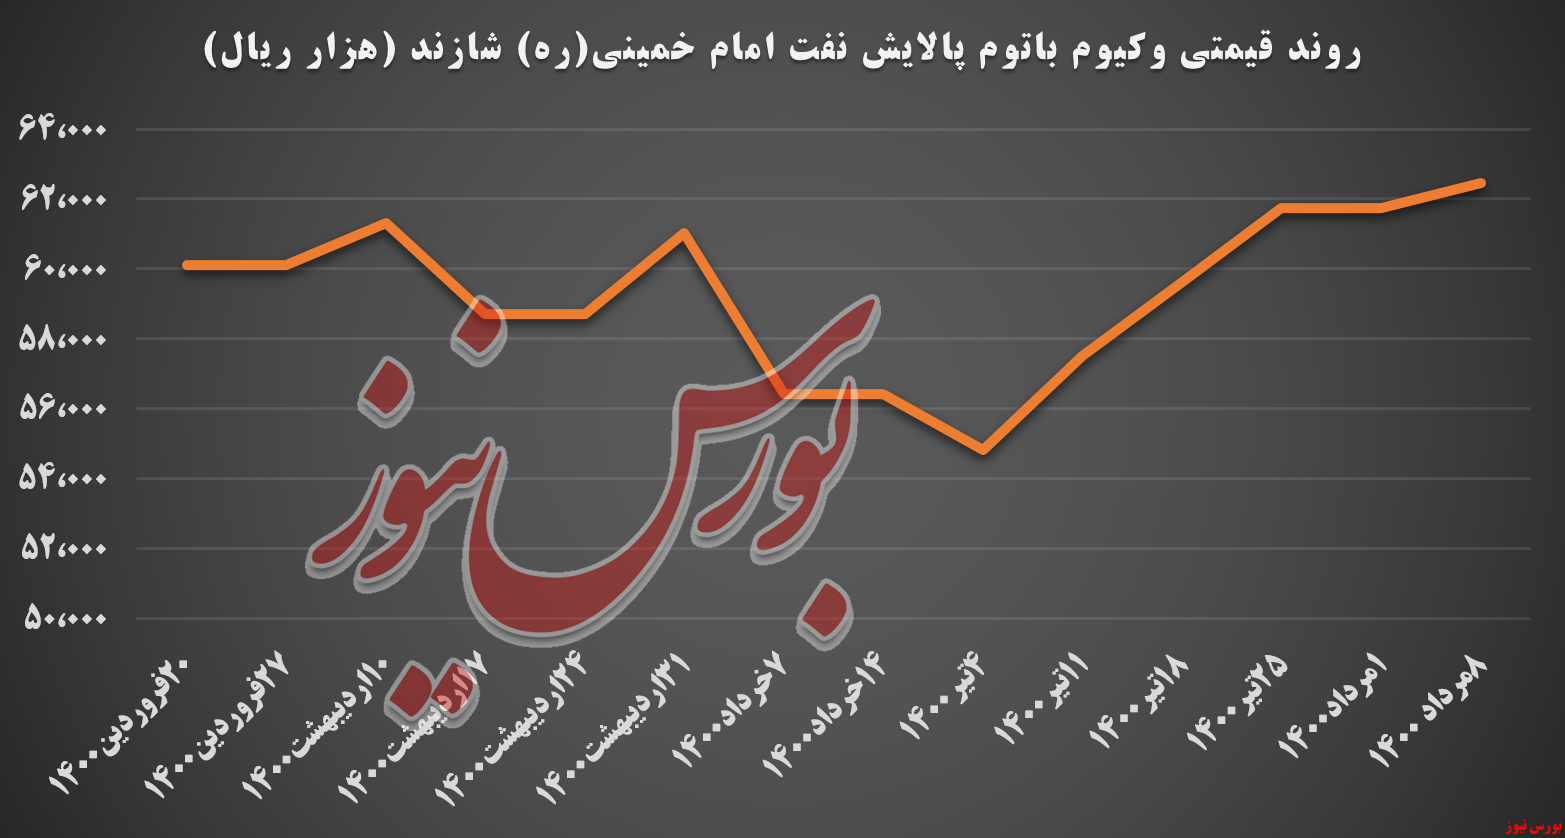 کاهش اندک نرخ های پالایش نفت امام خمینی (ره)